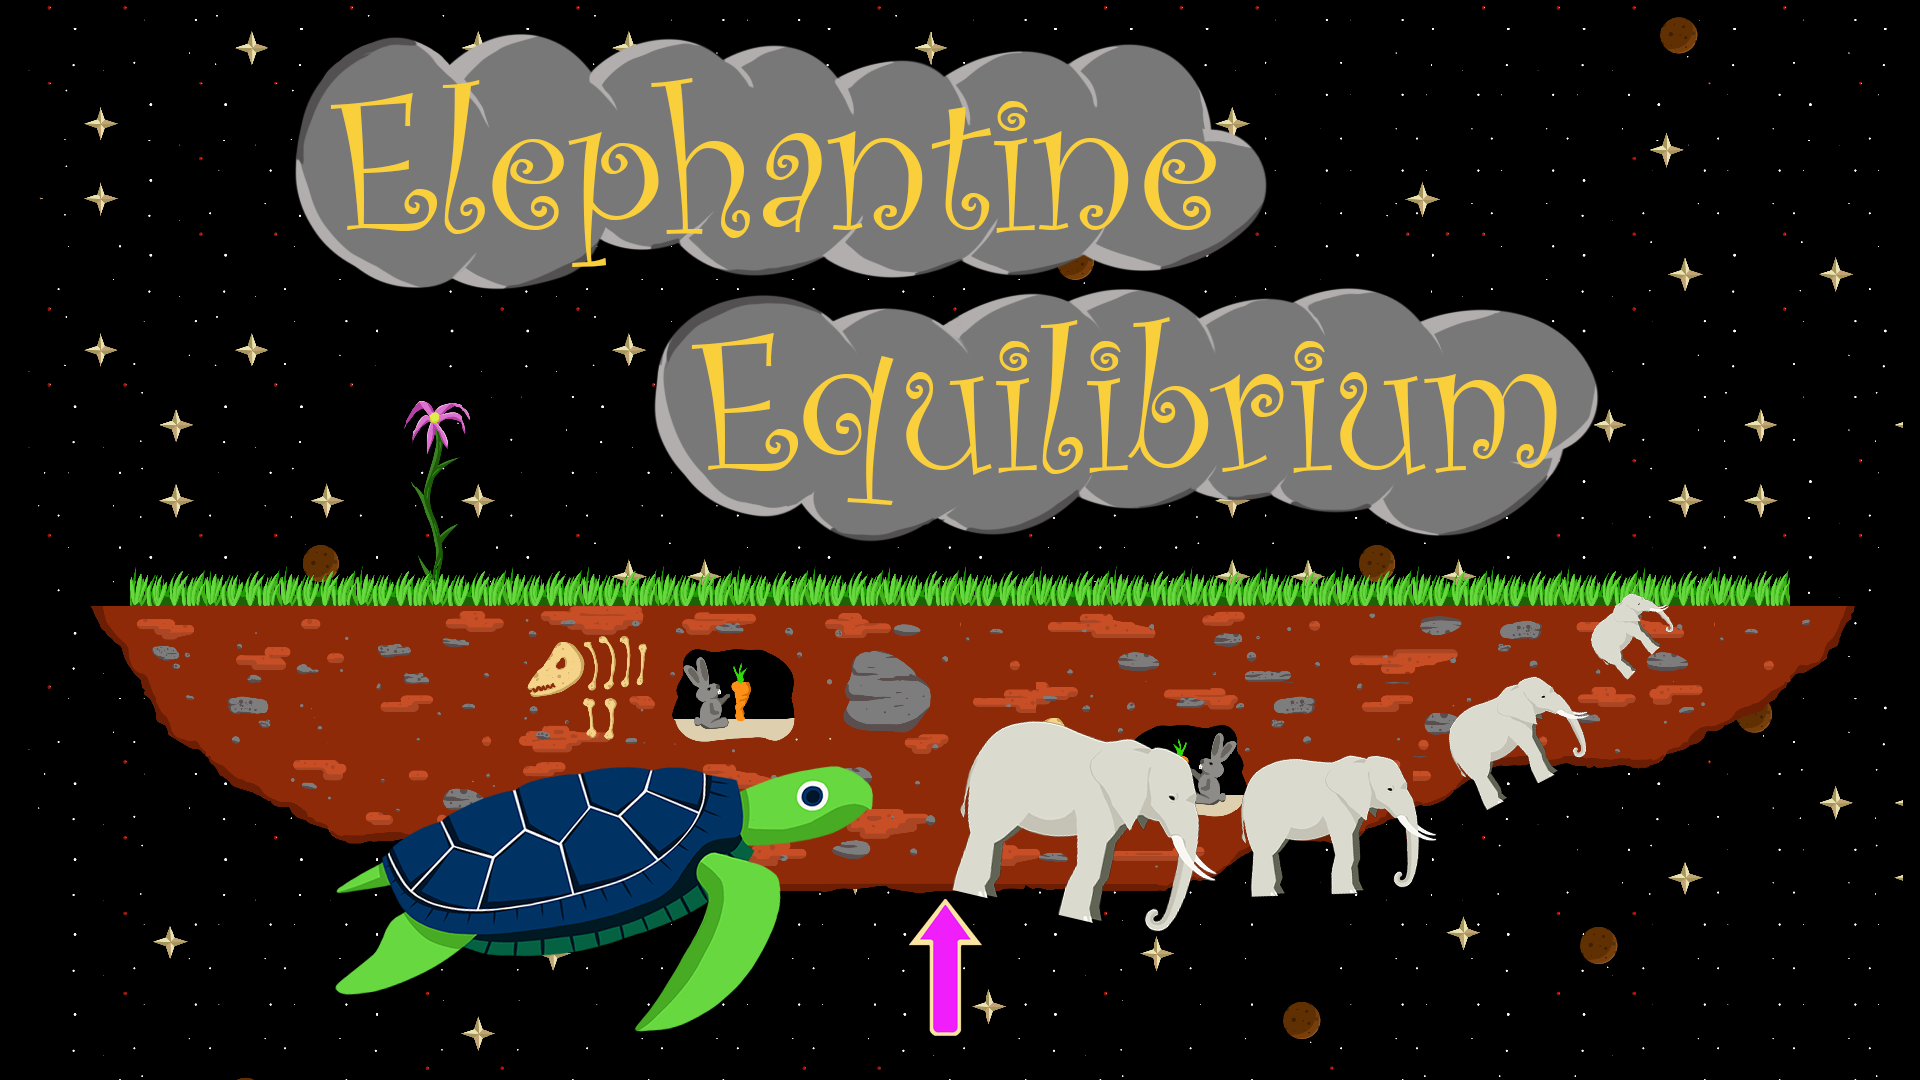 Elephantine Equilibrium